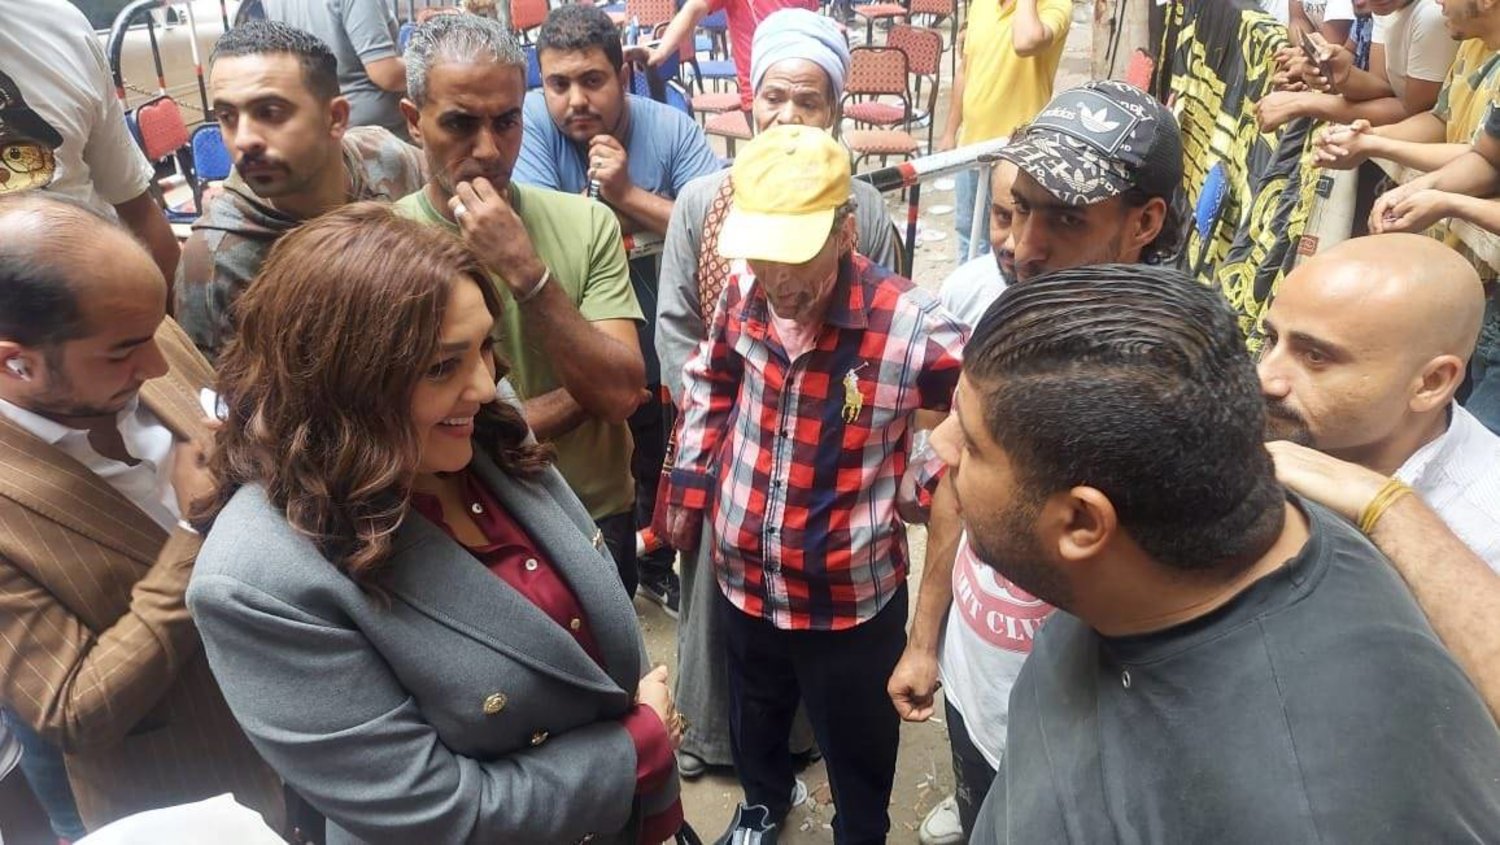 المرشحة المحتملة جميلة إسماعيل أمام أحد مكاتب الشهر العقاري بالقاهرة لجمع التوكيلات الشعبية (حساب جميلة الرسمي على «إكس»)